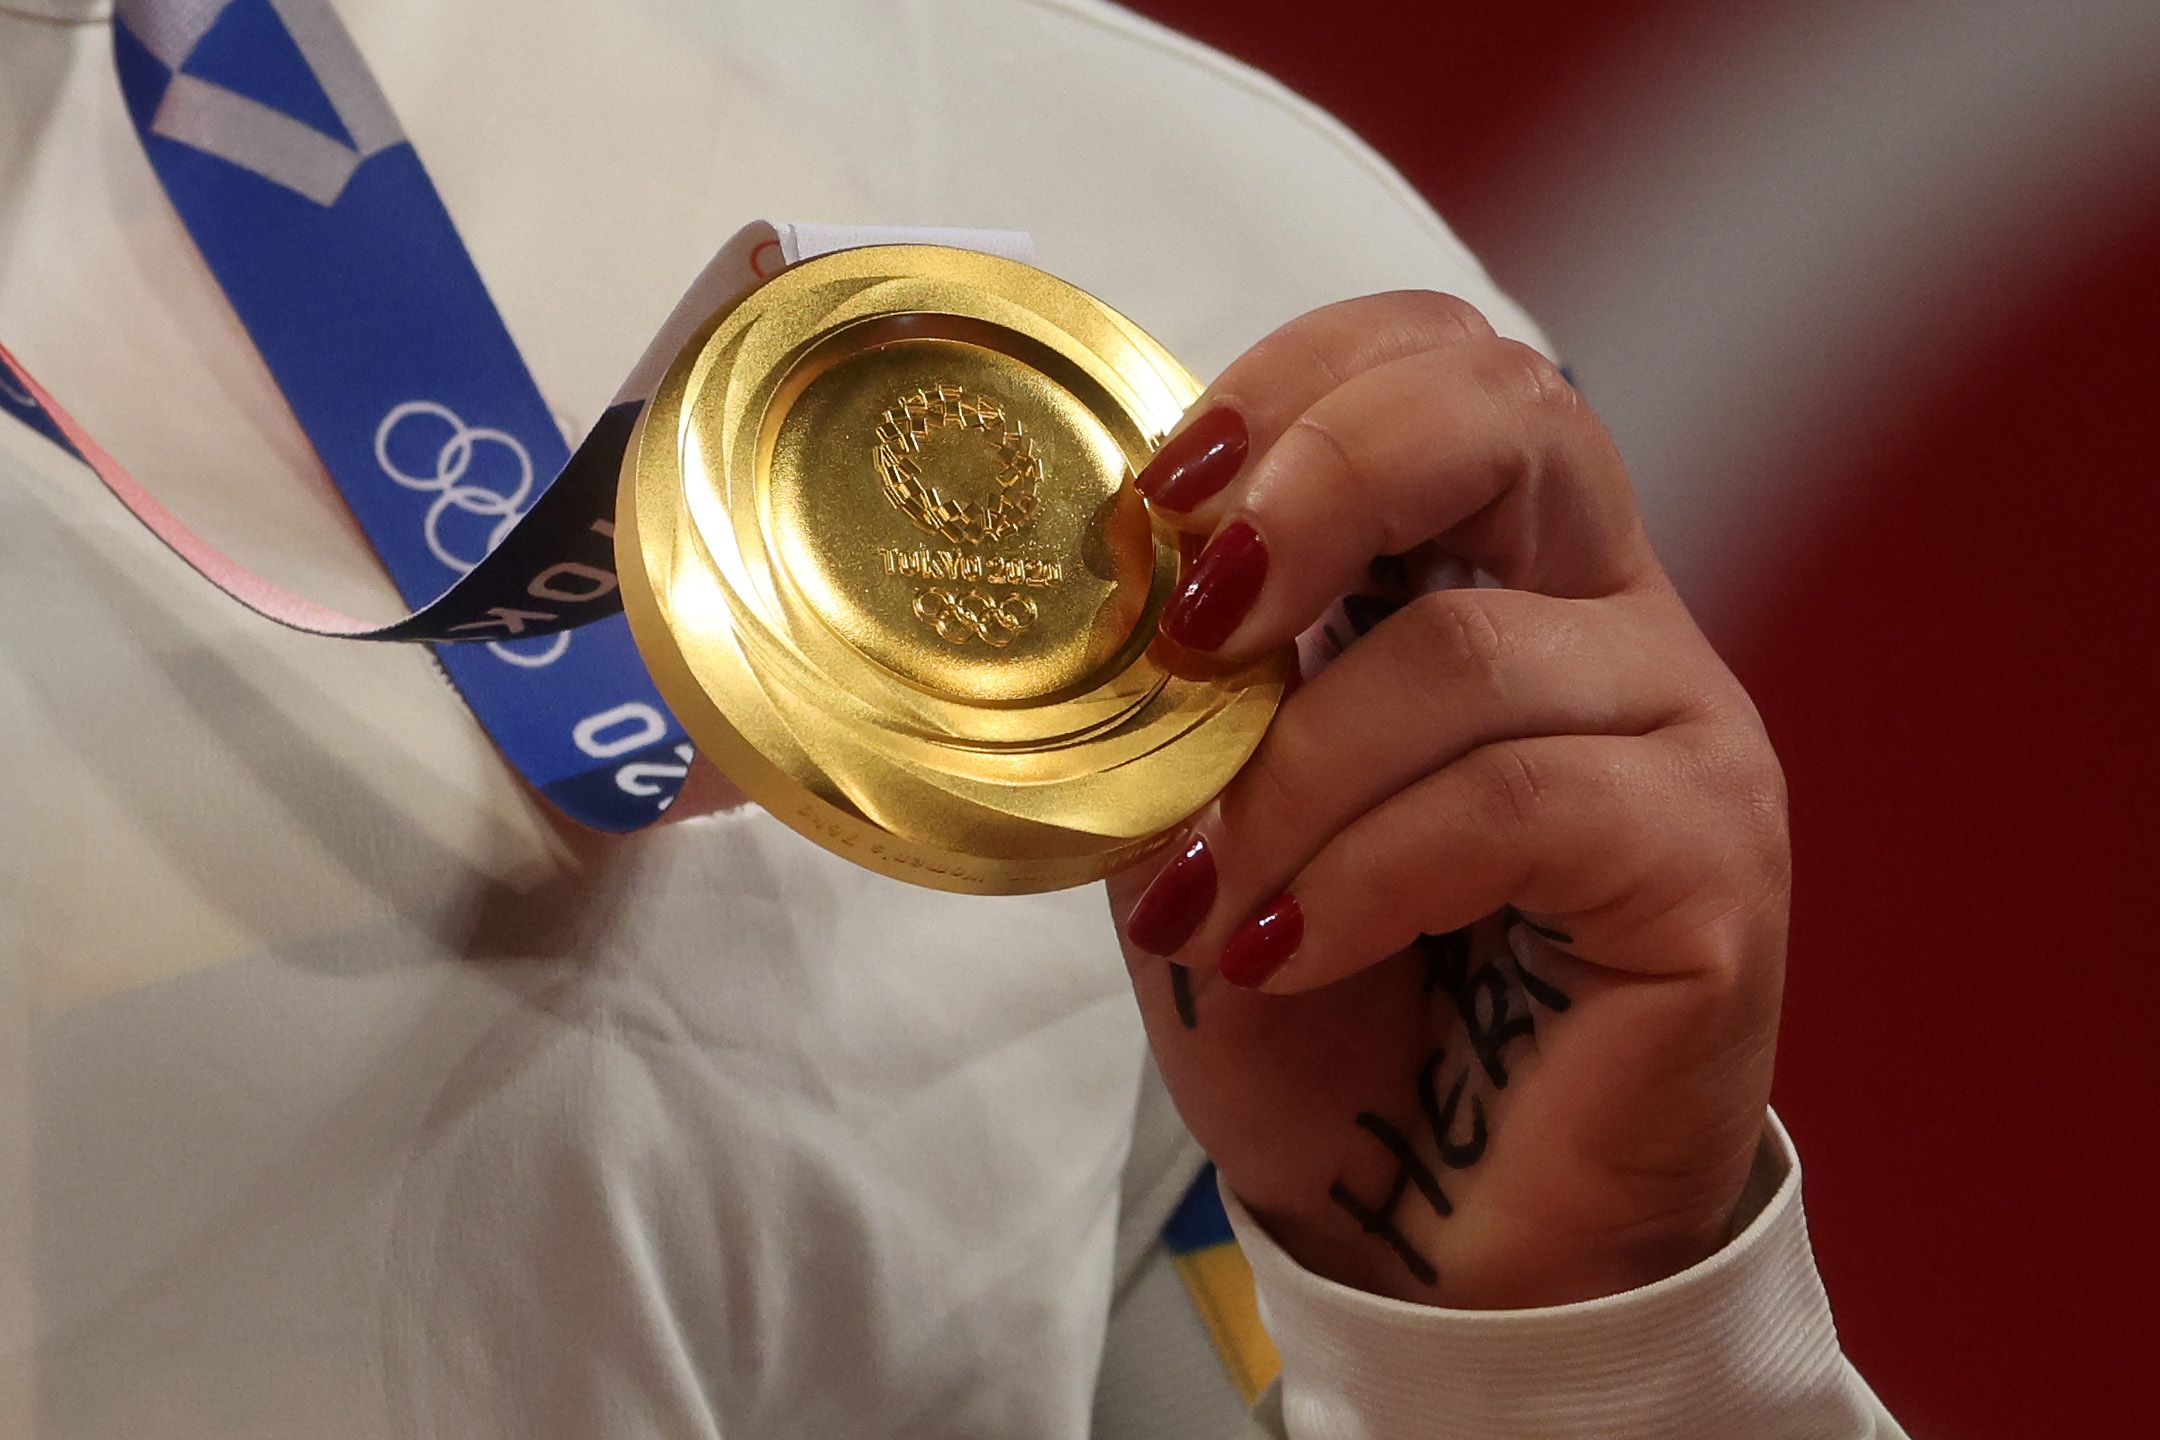 hoogtepunt bende Tweede leerjaar Prijsverschillen olympische medailles zijn gigantisch